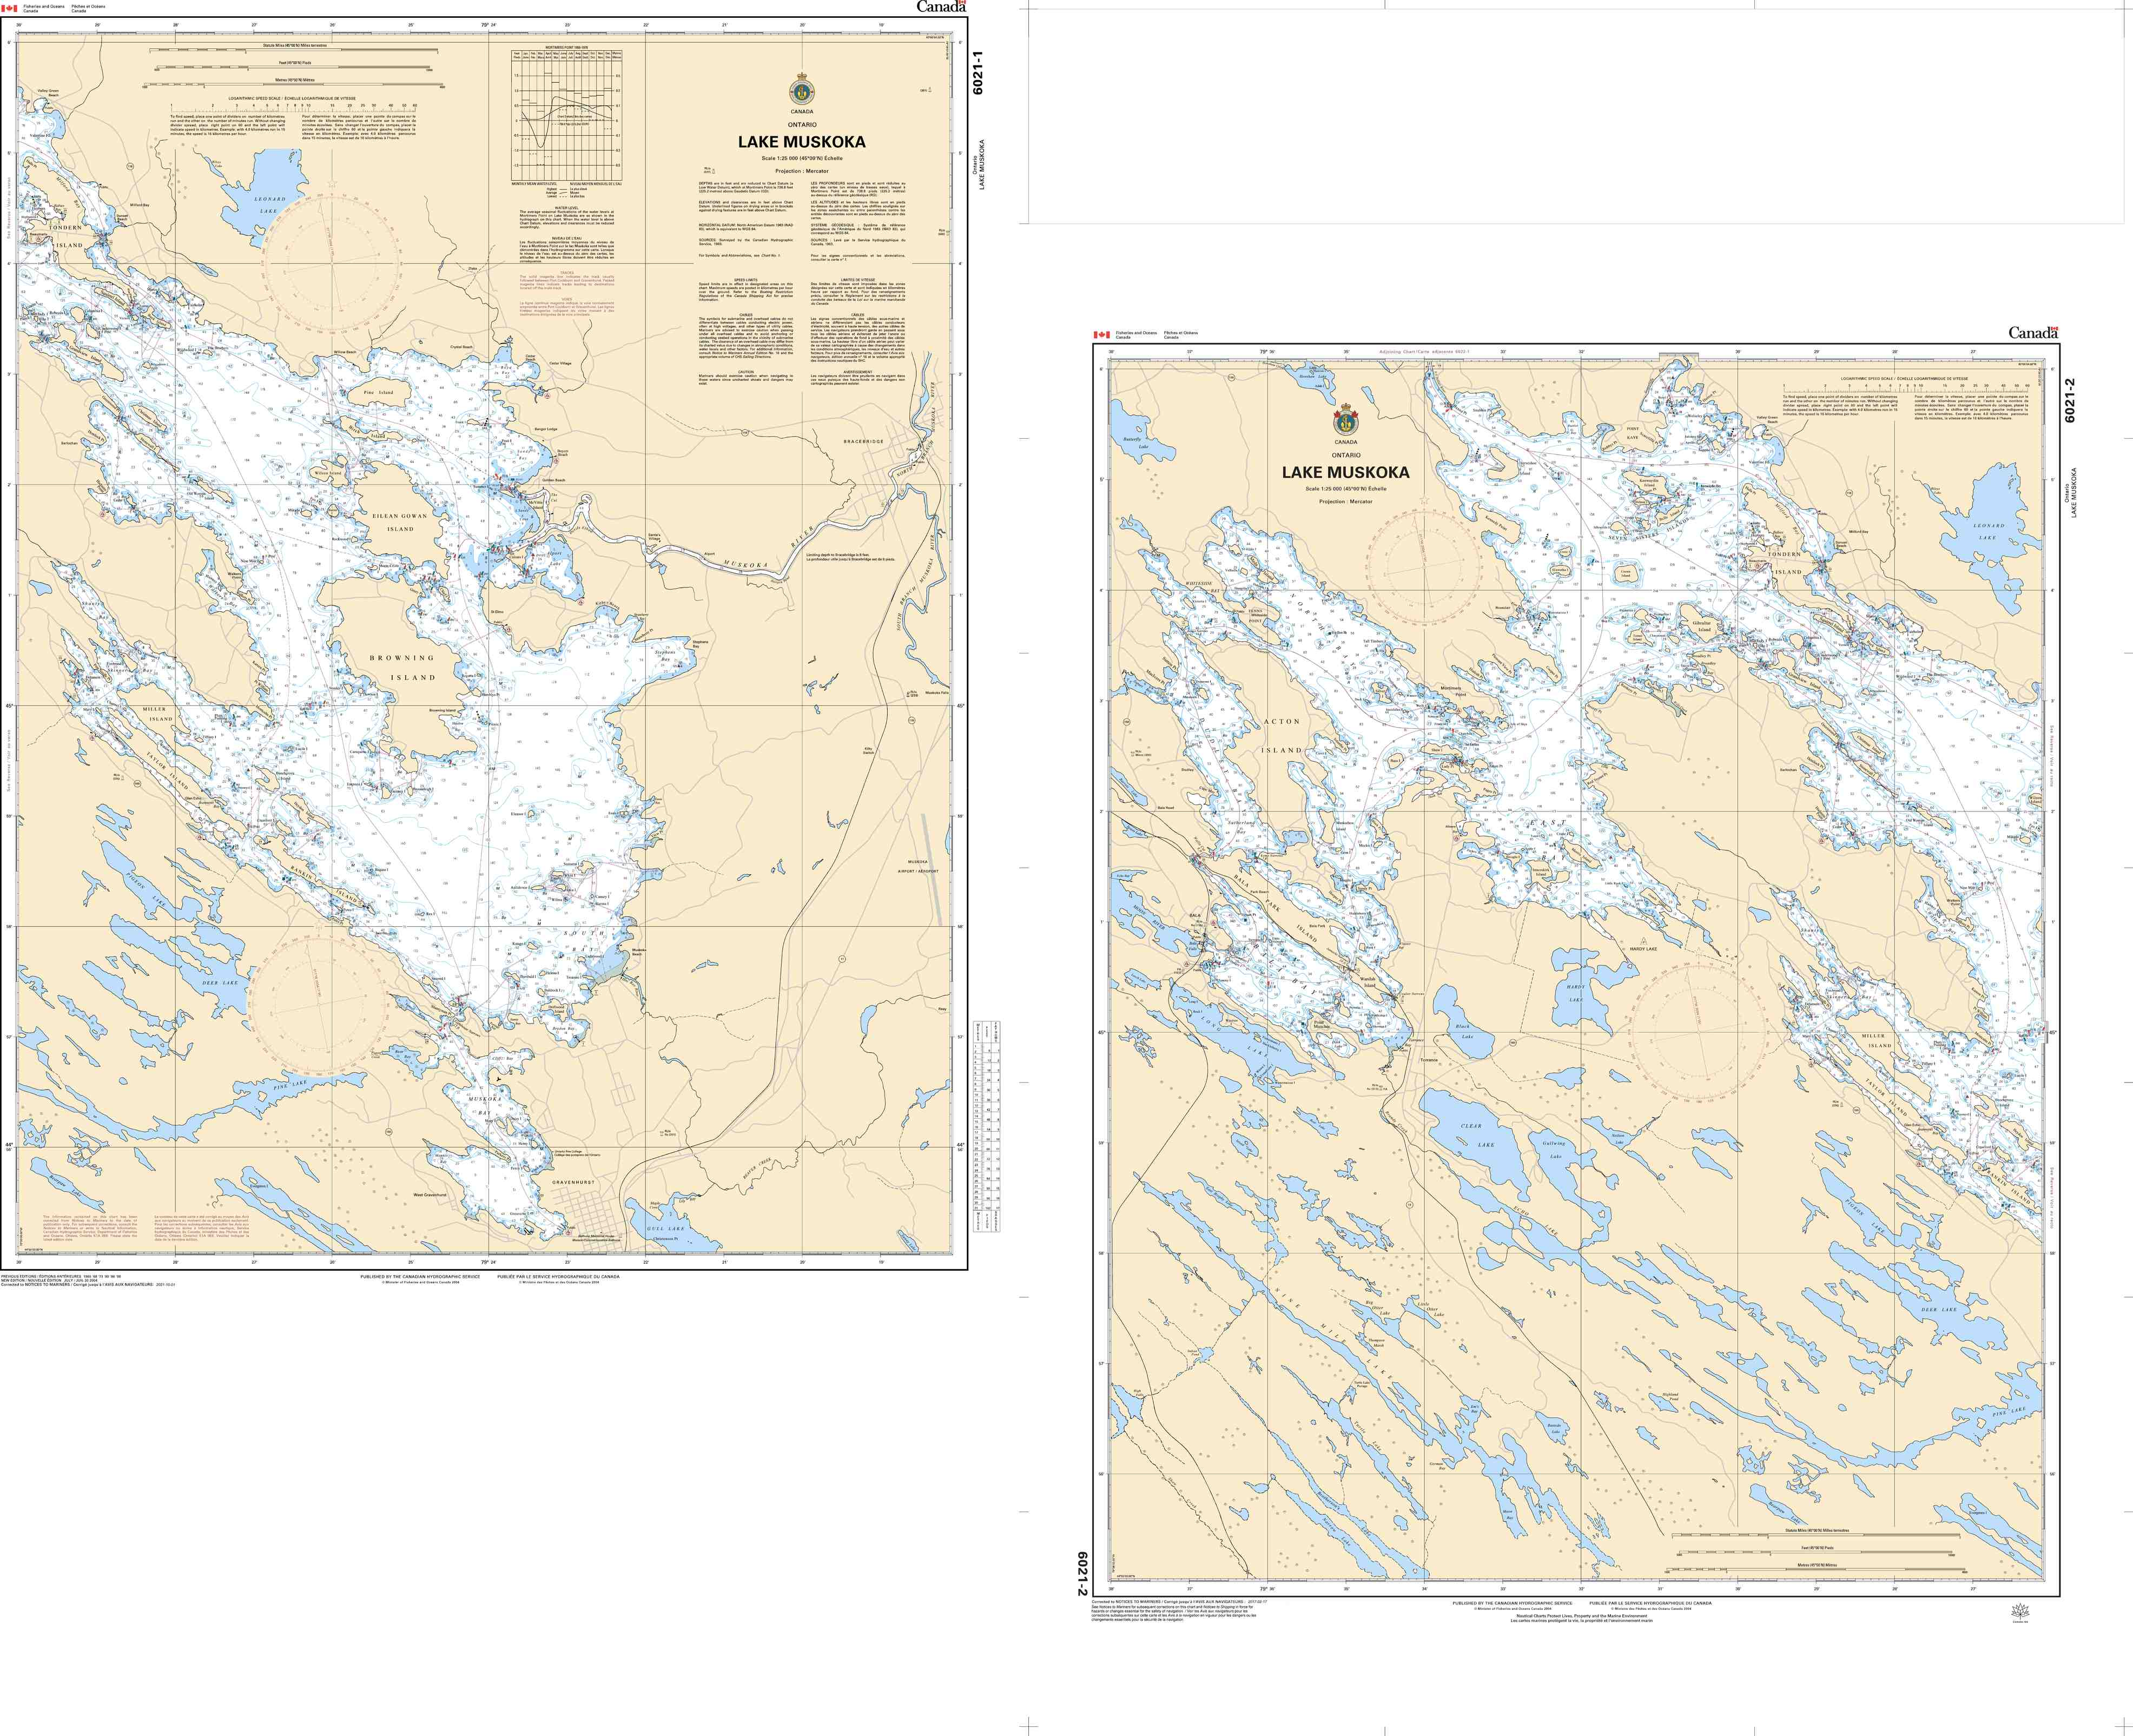 Canadian Hydrographic Service Nautical Chart CHS6021: Lake Muskoka